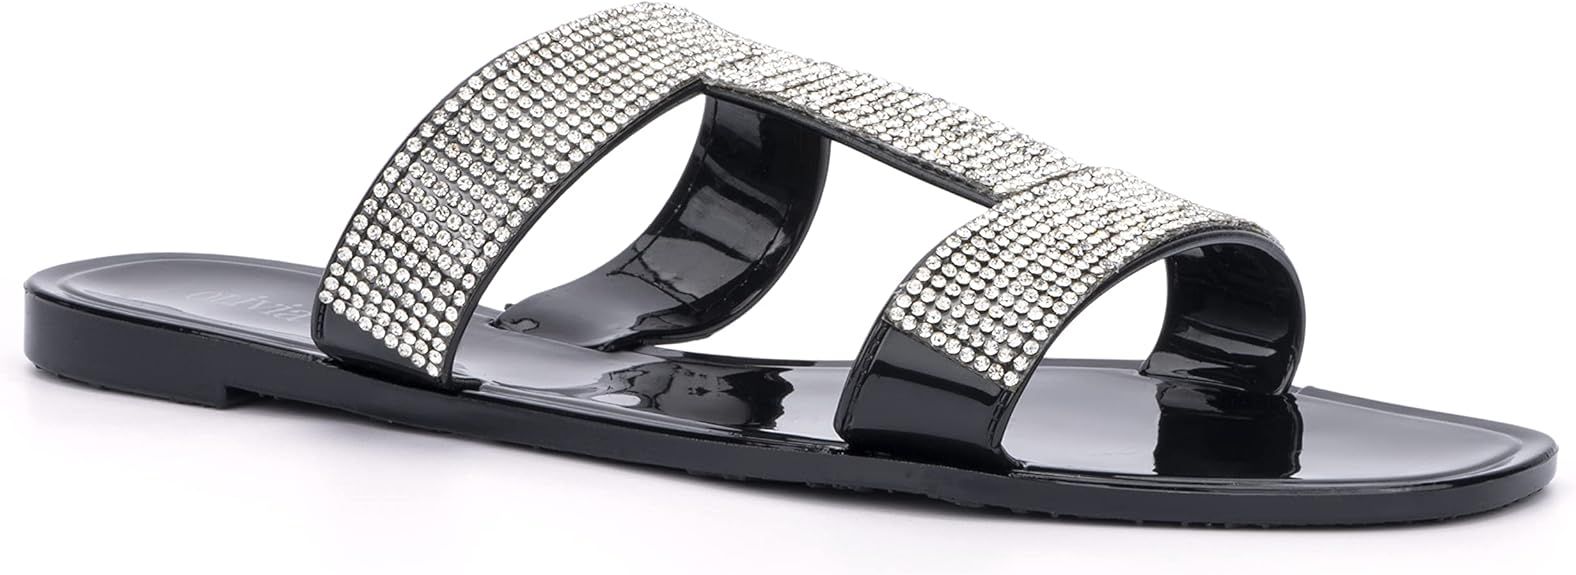 Olivia Miller Women’s Fashion Ladies Shoes, PVC Jelly w Embellished Glitter Studded Rhinestones... | Amazon (US)